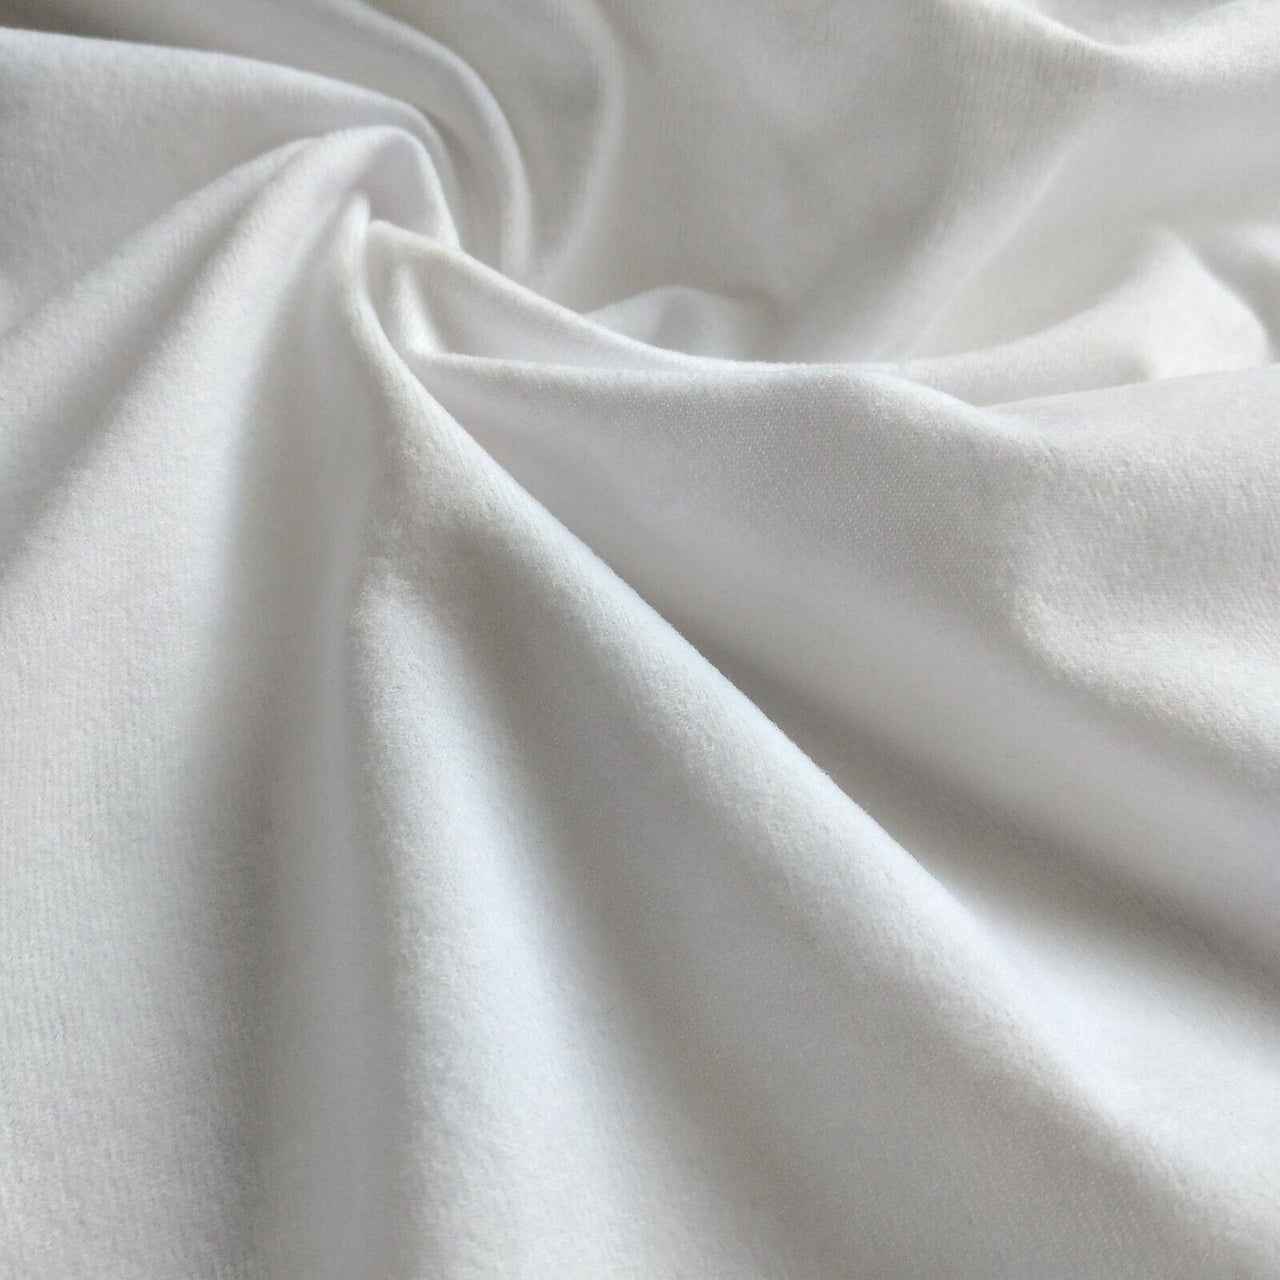 Sublimationsstoff – preisgünstiges Suedette – Polyester zum Drucken vorbereitet